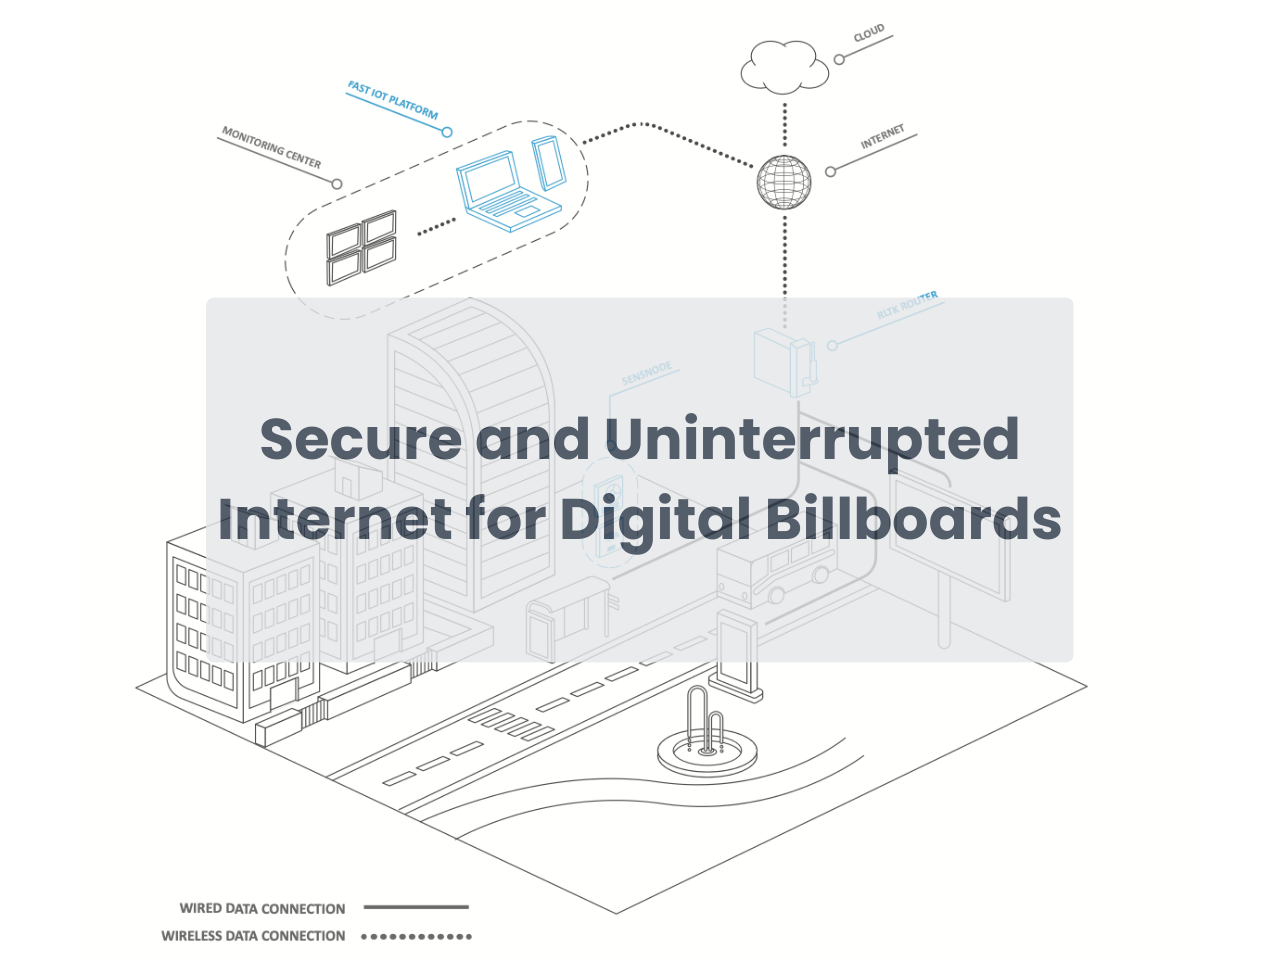 Secure and Uninterrupted Internet for Digital Billboards